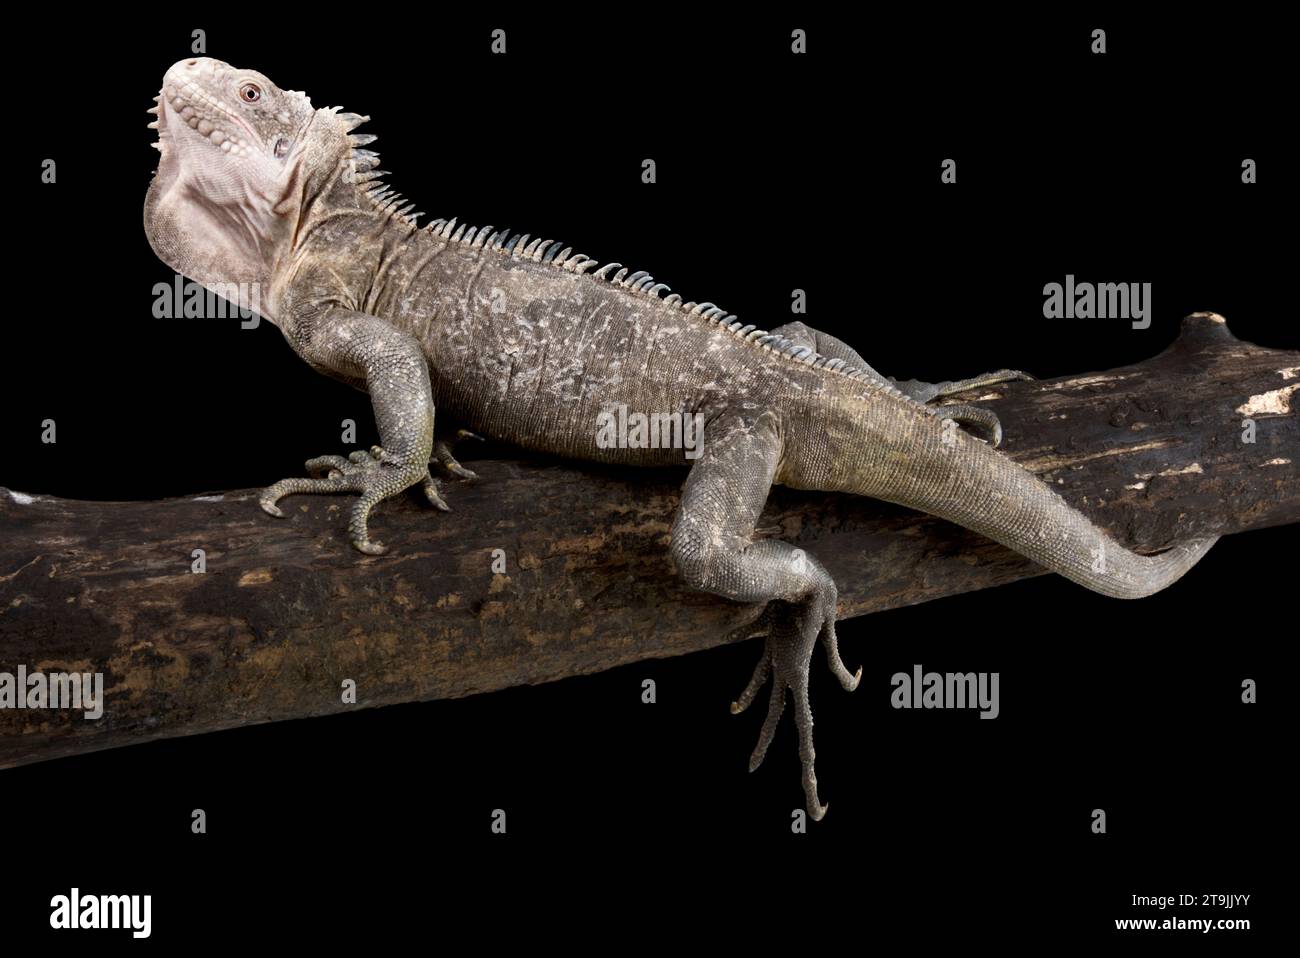 Die Kleinantillen-Iguana (Iguana deliatissima) ist eine stark gefährdete Reptilienart, die auf einigen Inseln der Antillen endemisch ist. Stockfoto